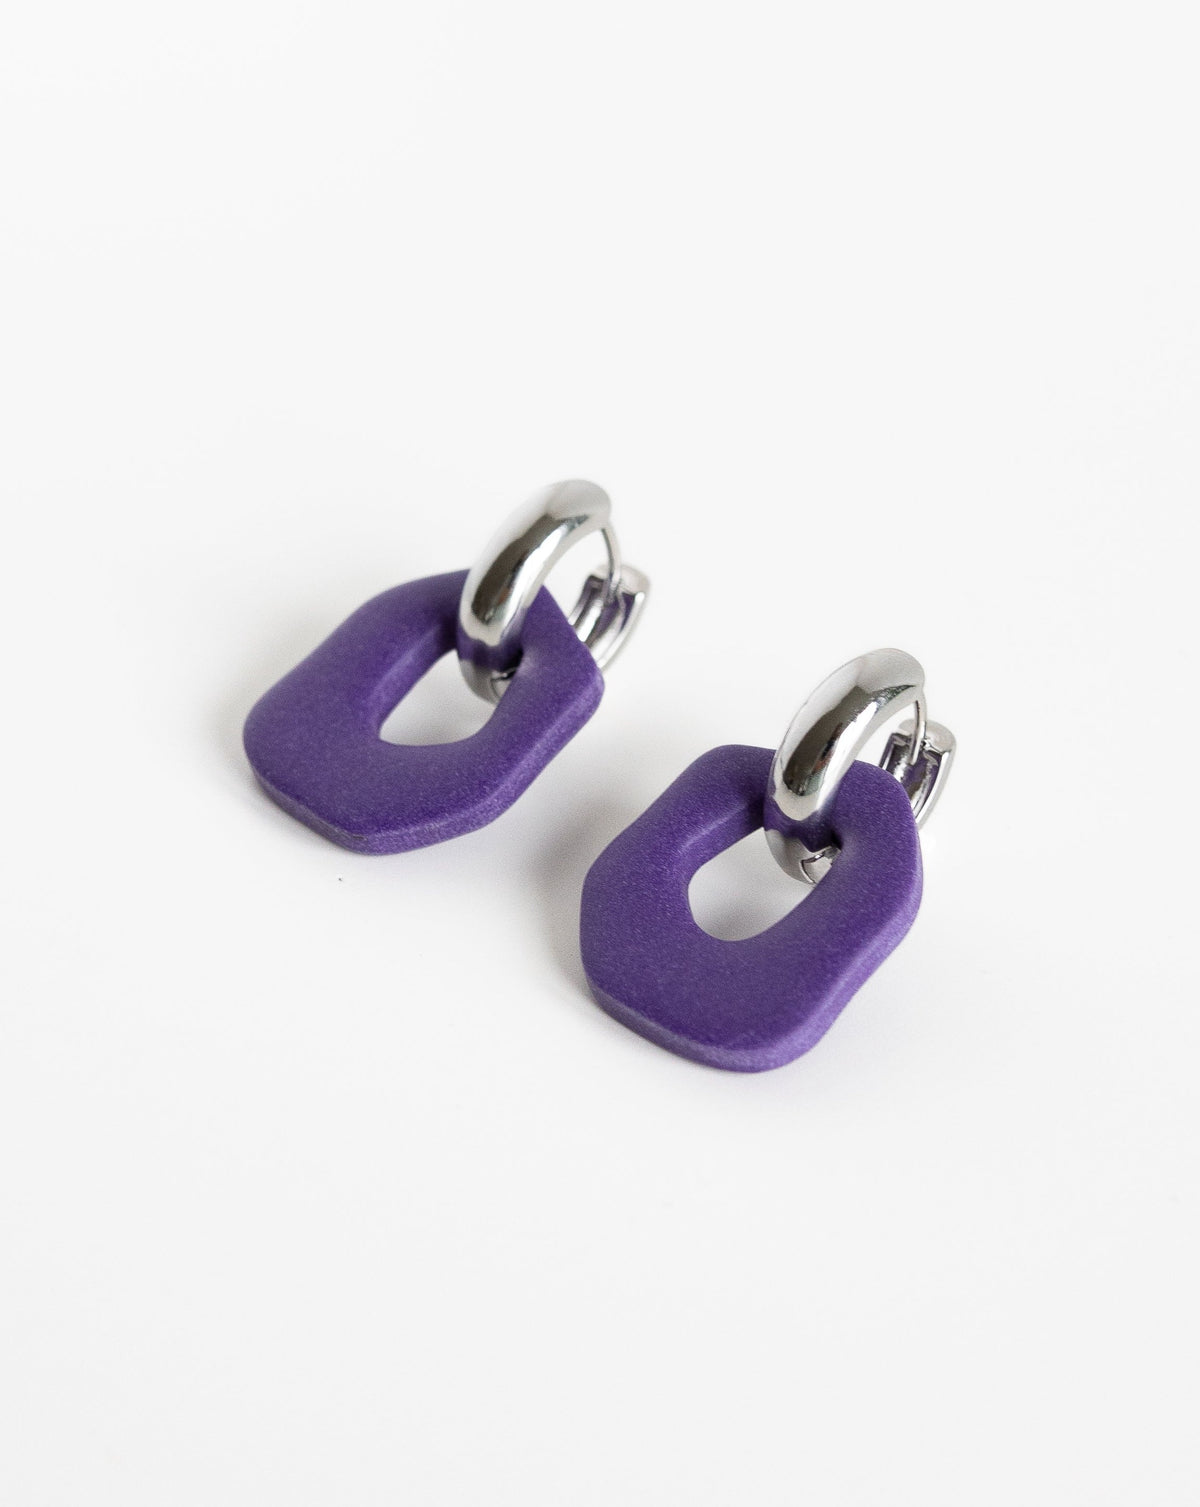 Darien earrings in Purple with silver hoops